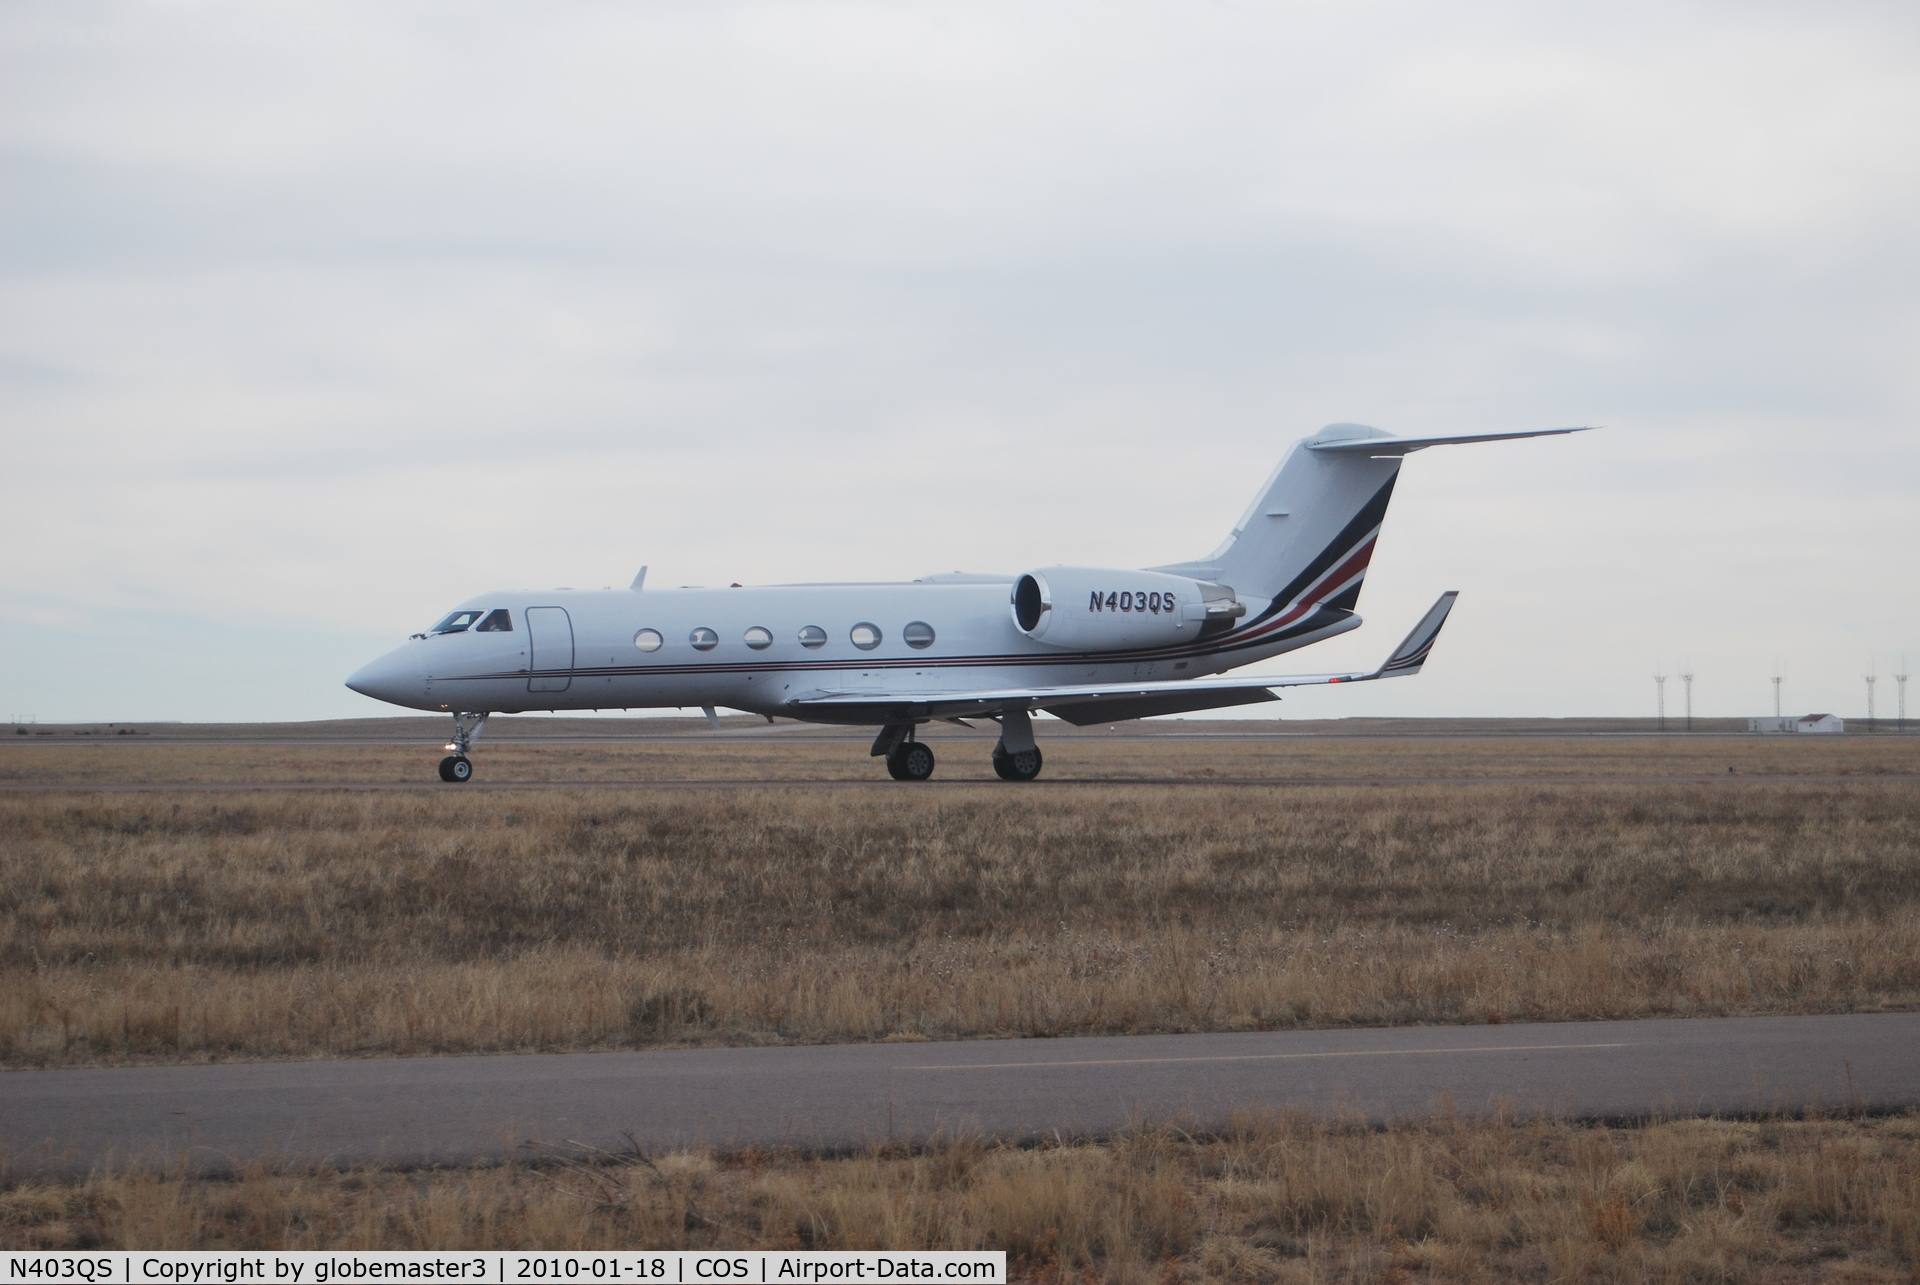 N403QS, 2000 Gulfstream Aerospace G-IV C/N 1403, departing colorado springs airport